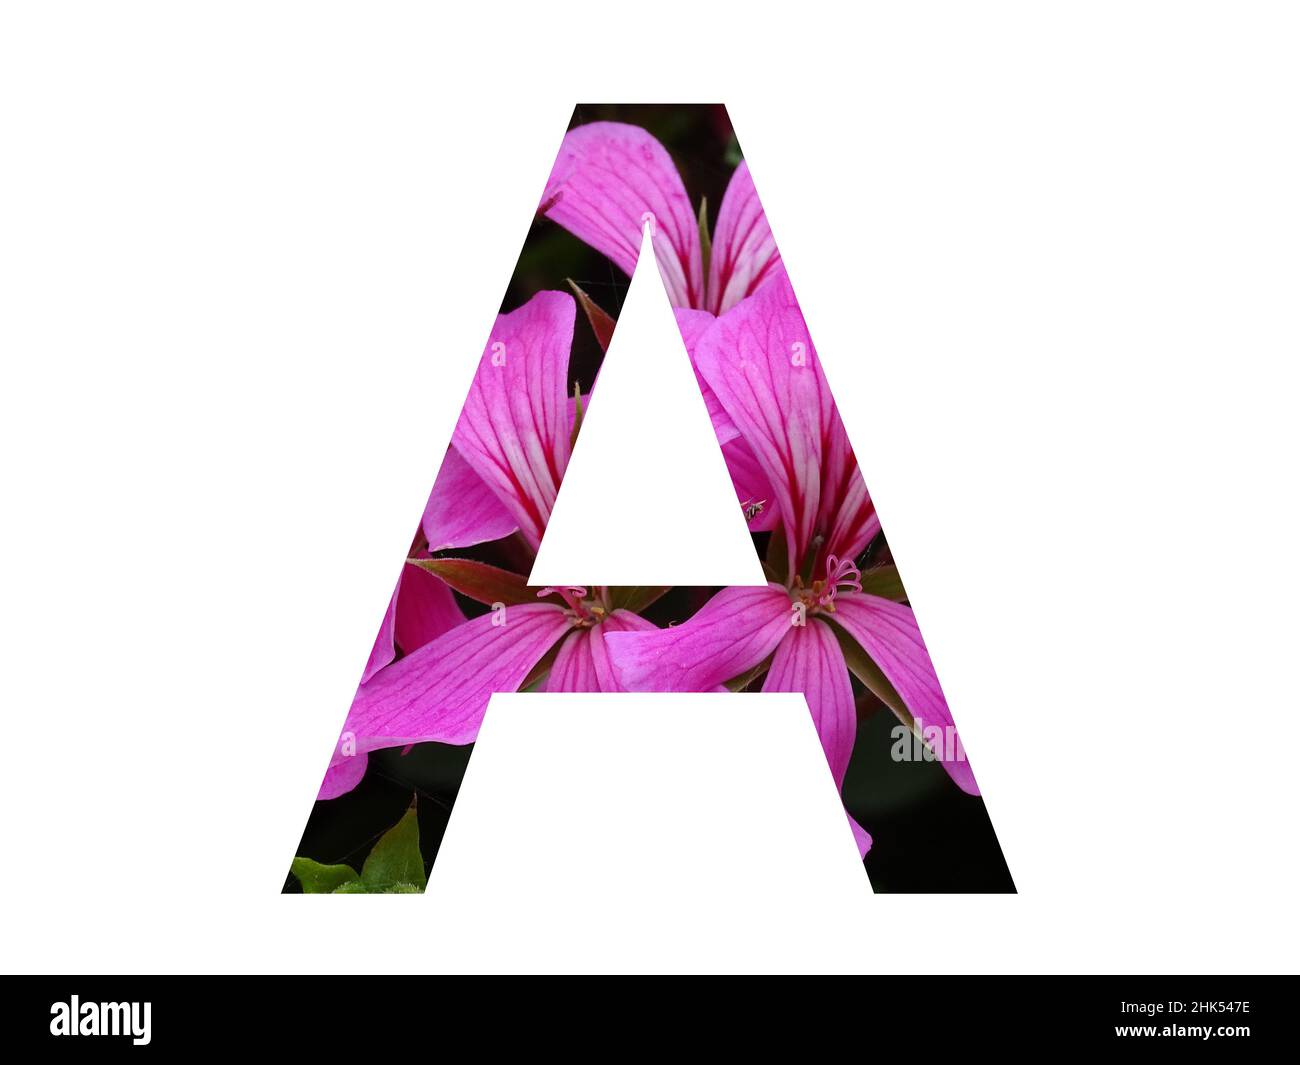 Lettre A de l'alphabet faite d'une fleur rose de pélargonium, isolée sur fond blanc Banque D'Images